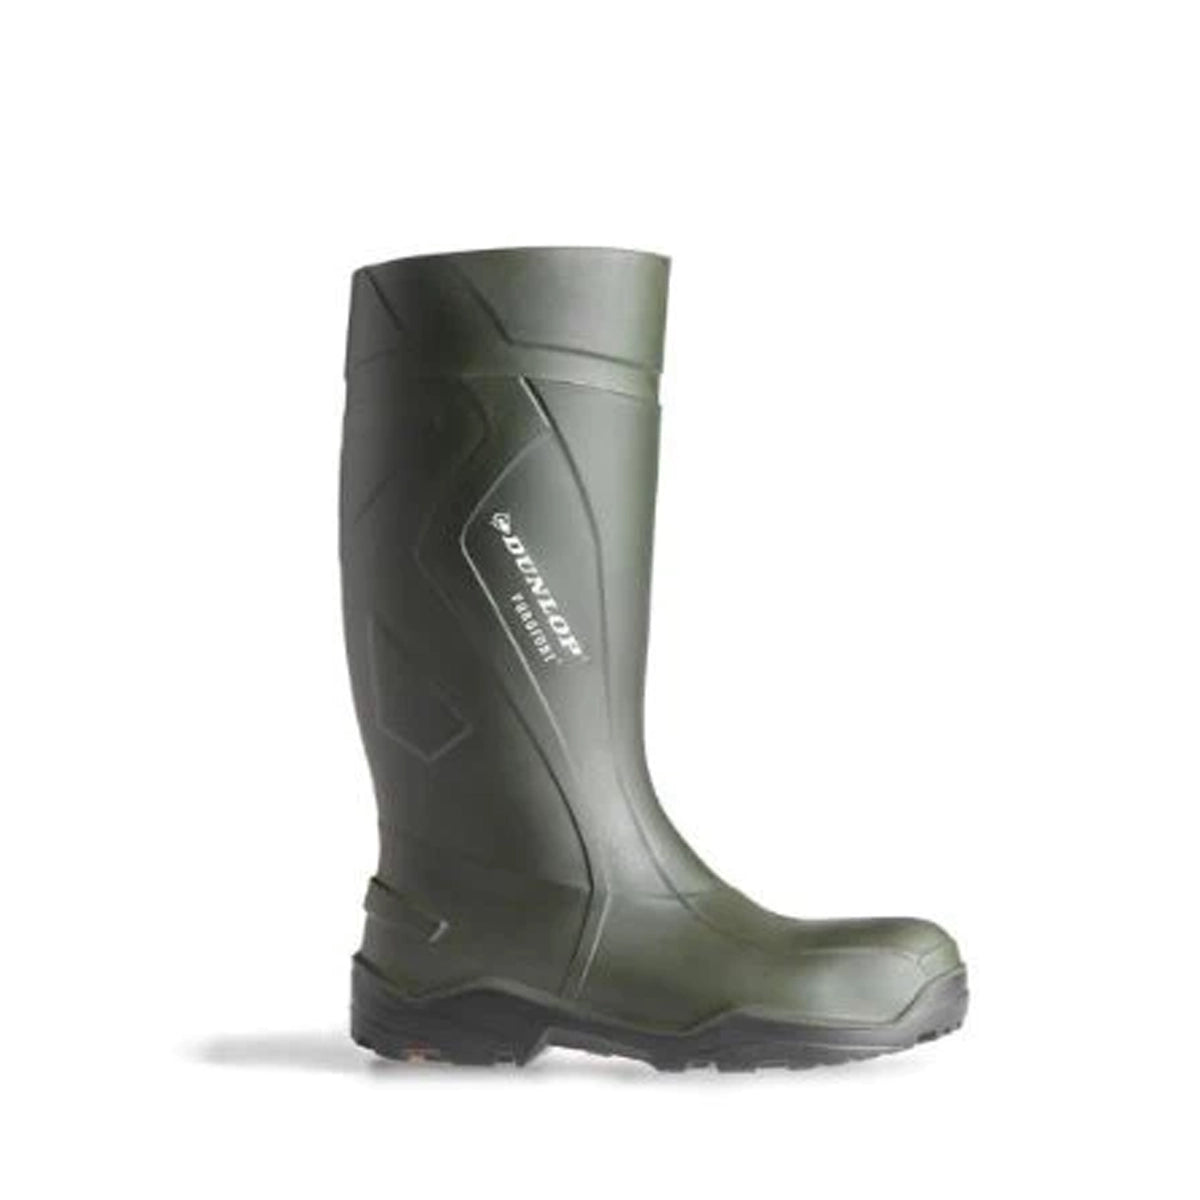 Dunlop D760943 Purofort + Wellington Boots